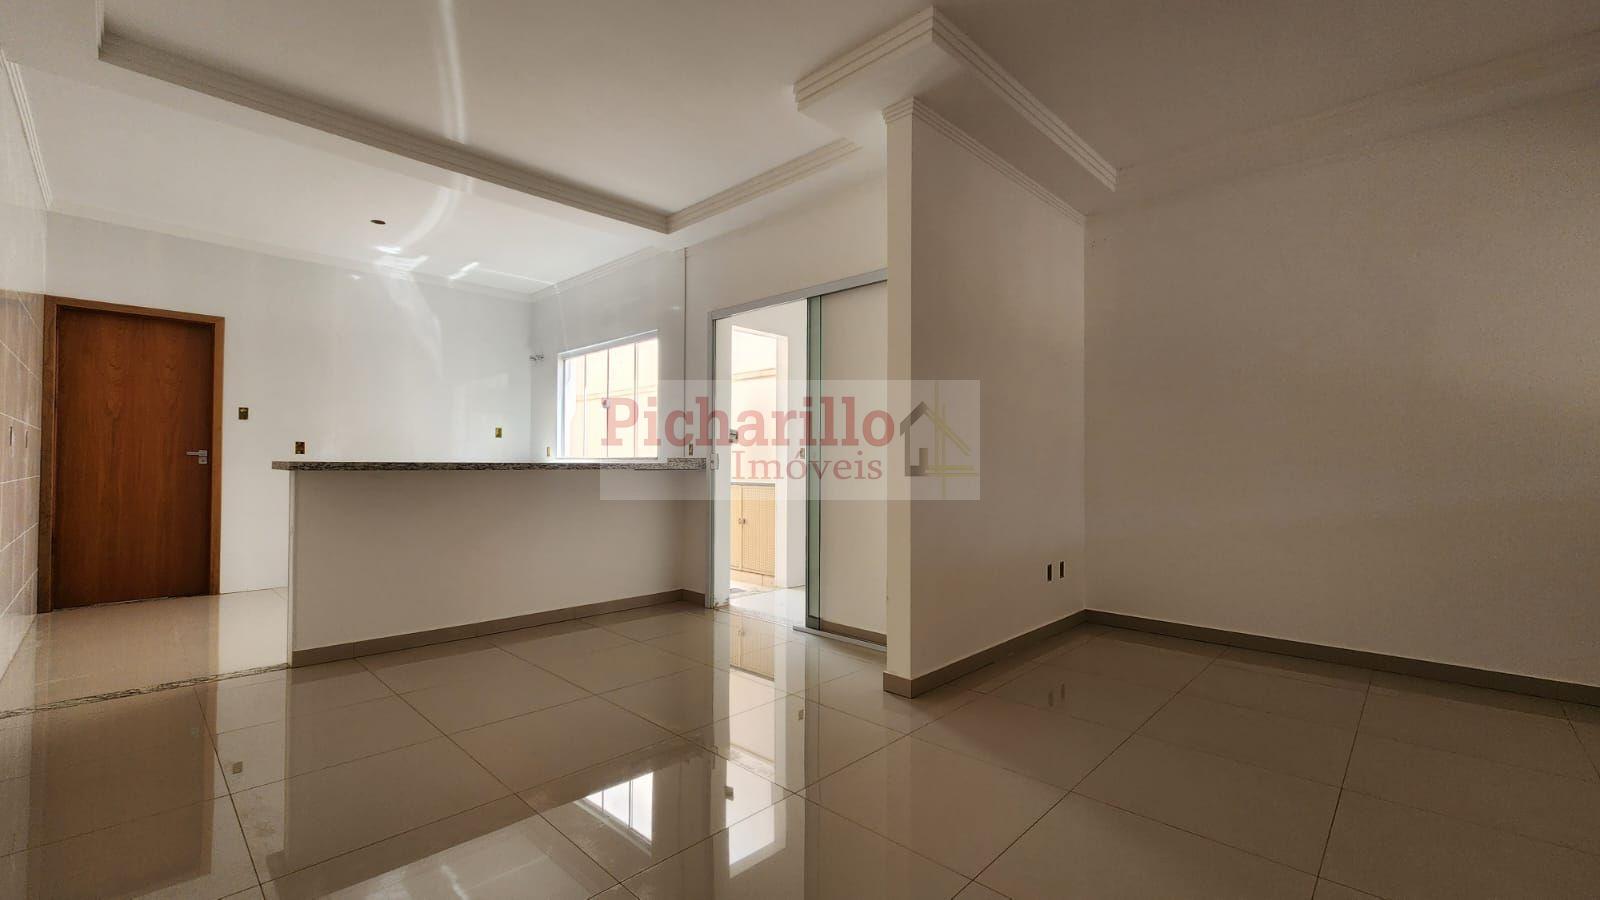 Casa com 2 dormitórios (1 suíte) à venda, 110 m² - Vila Prado - São Carlos/SP